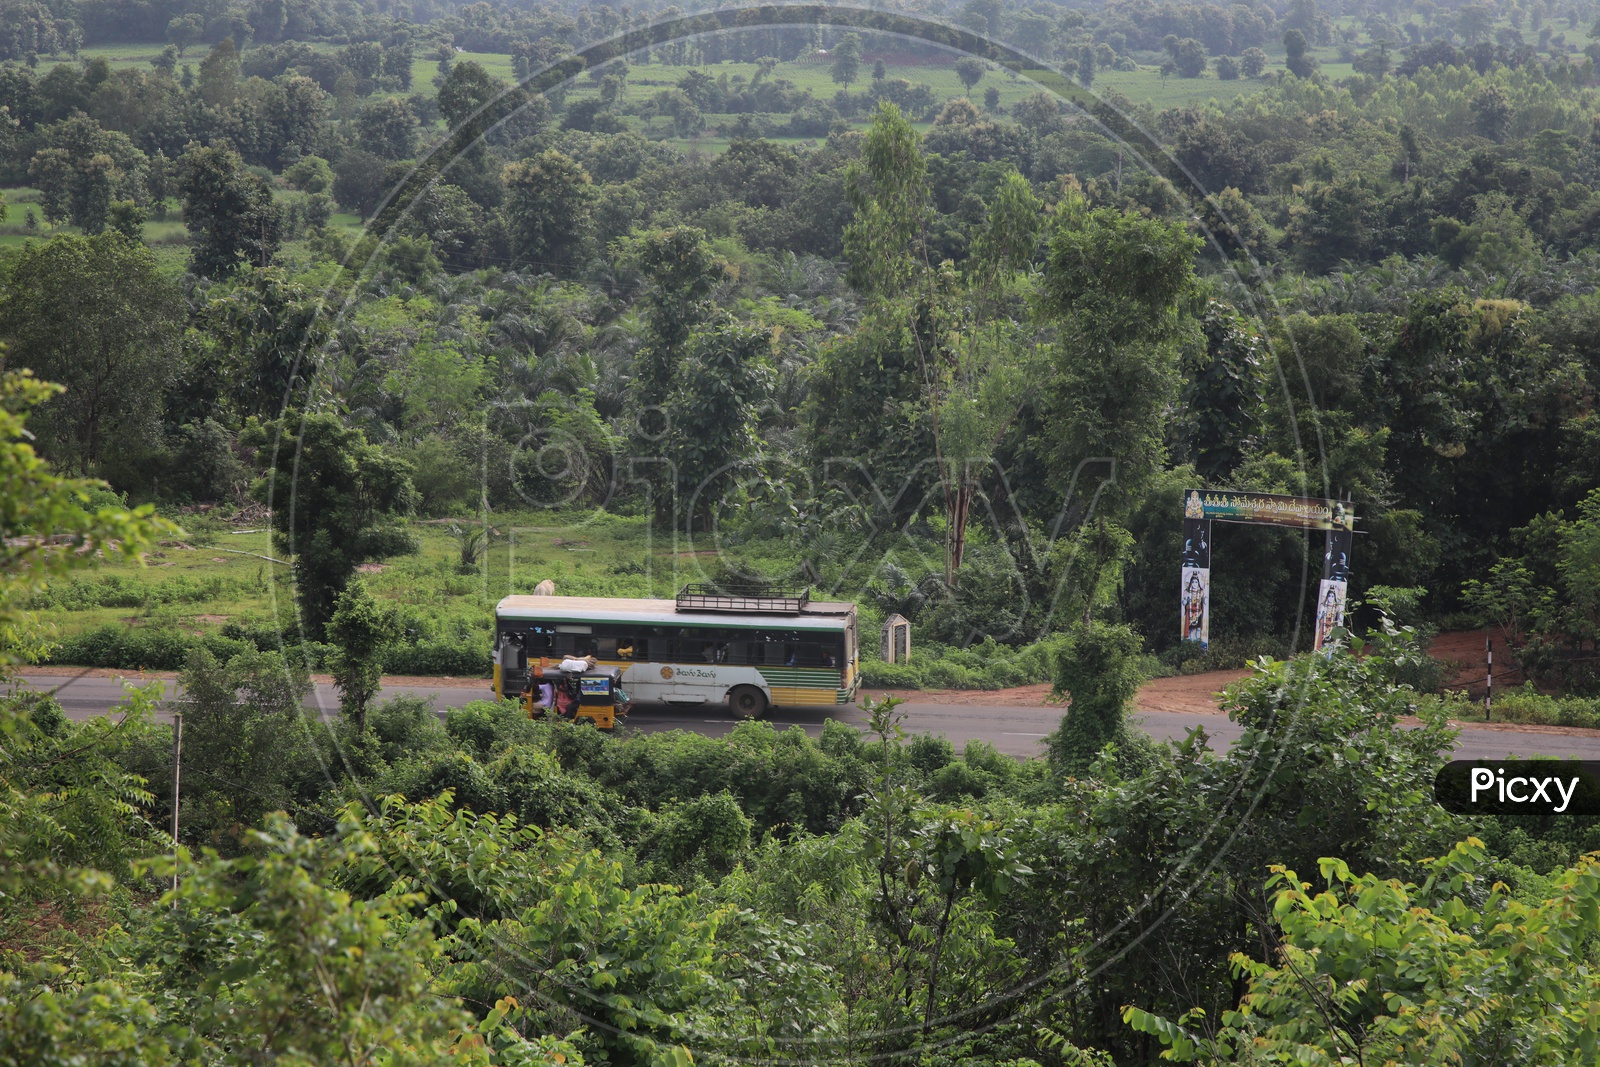 APSRTC Rural Village Buses Running Between Villages